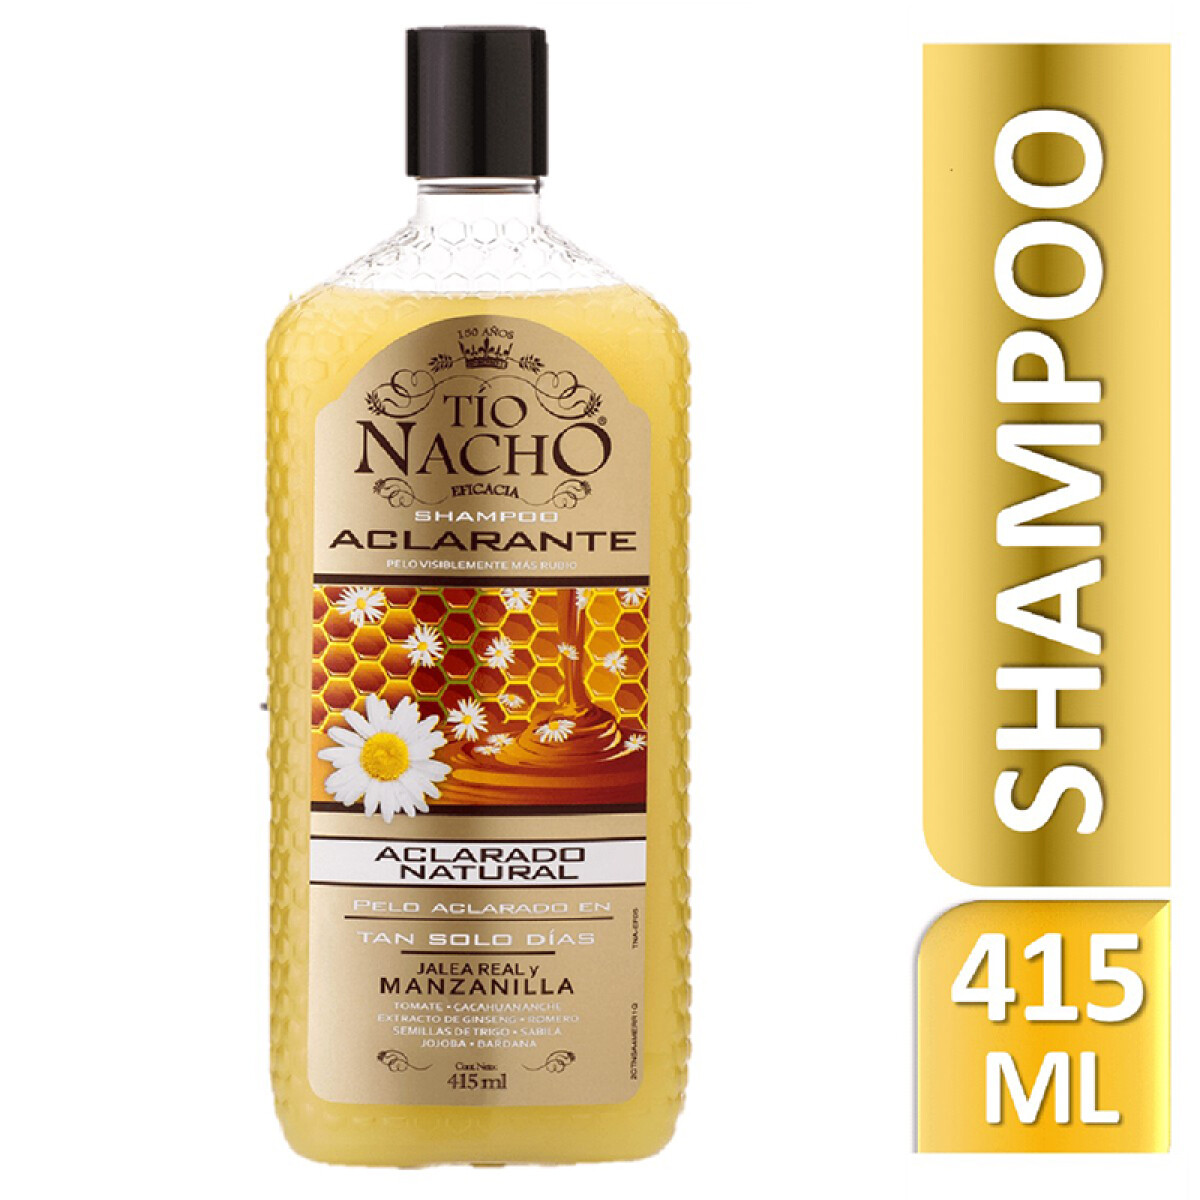 Shampoo Tío Nacho - Aclarante 